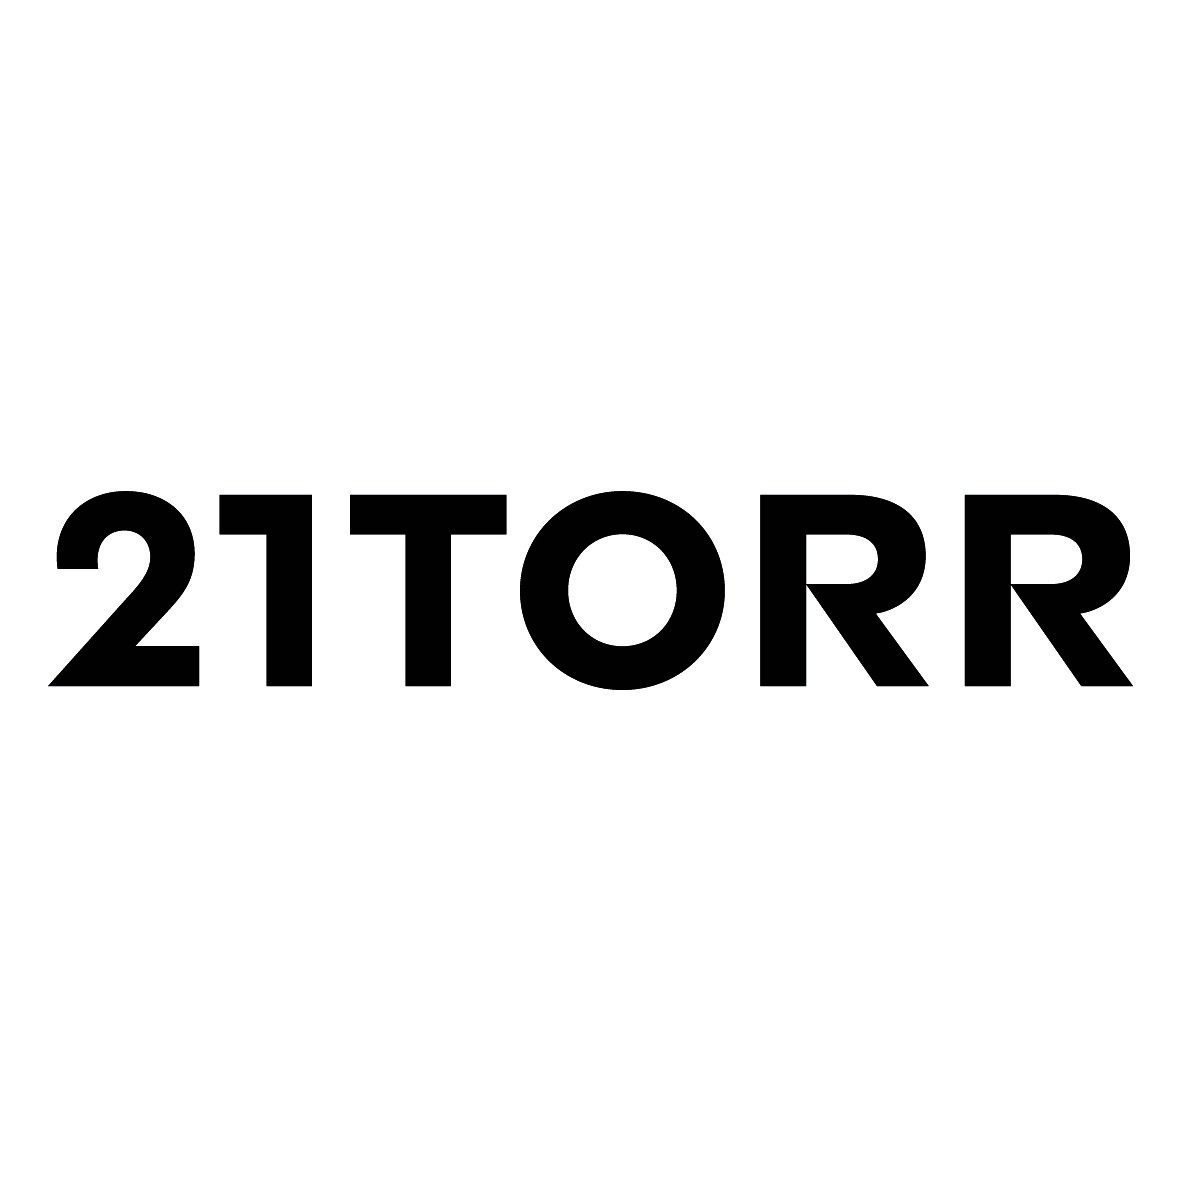 21TORR Agency